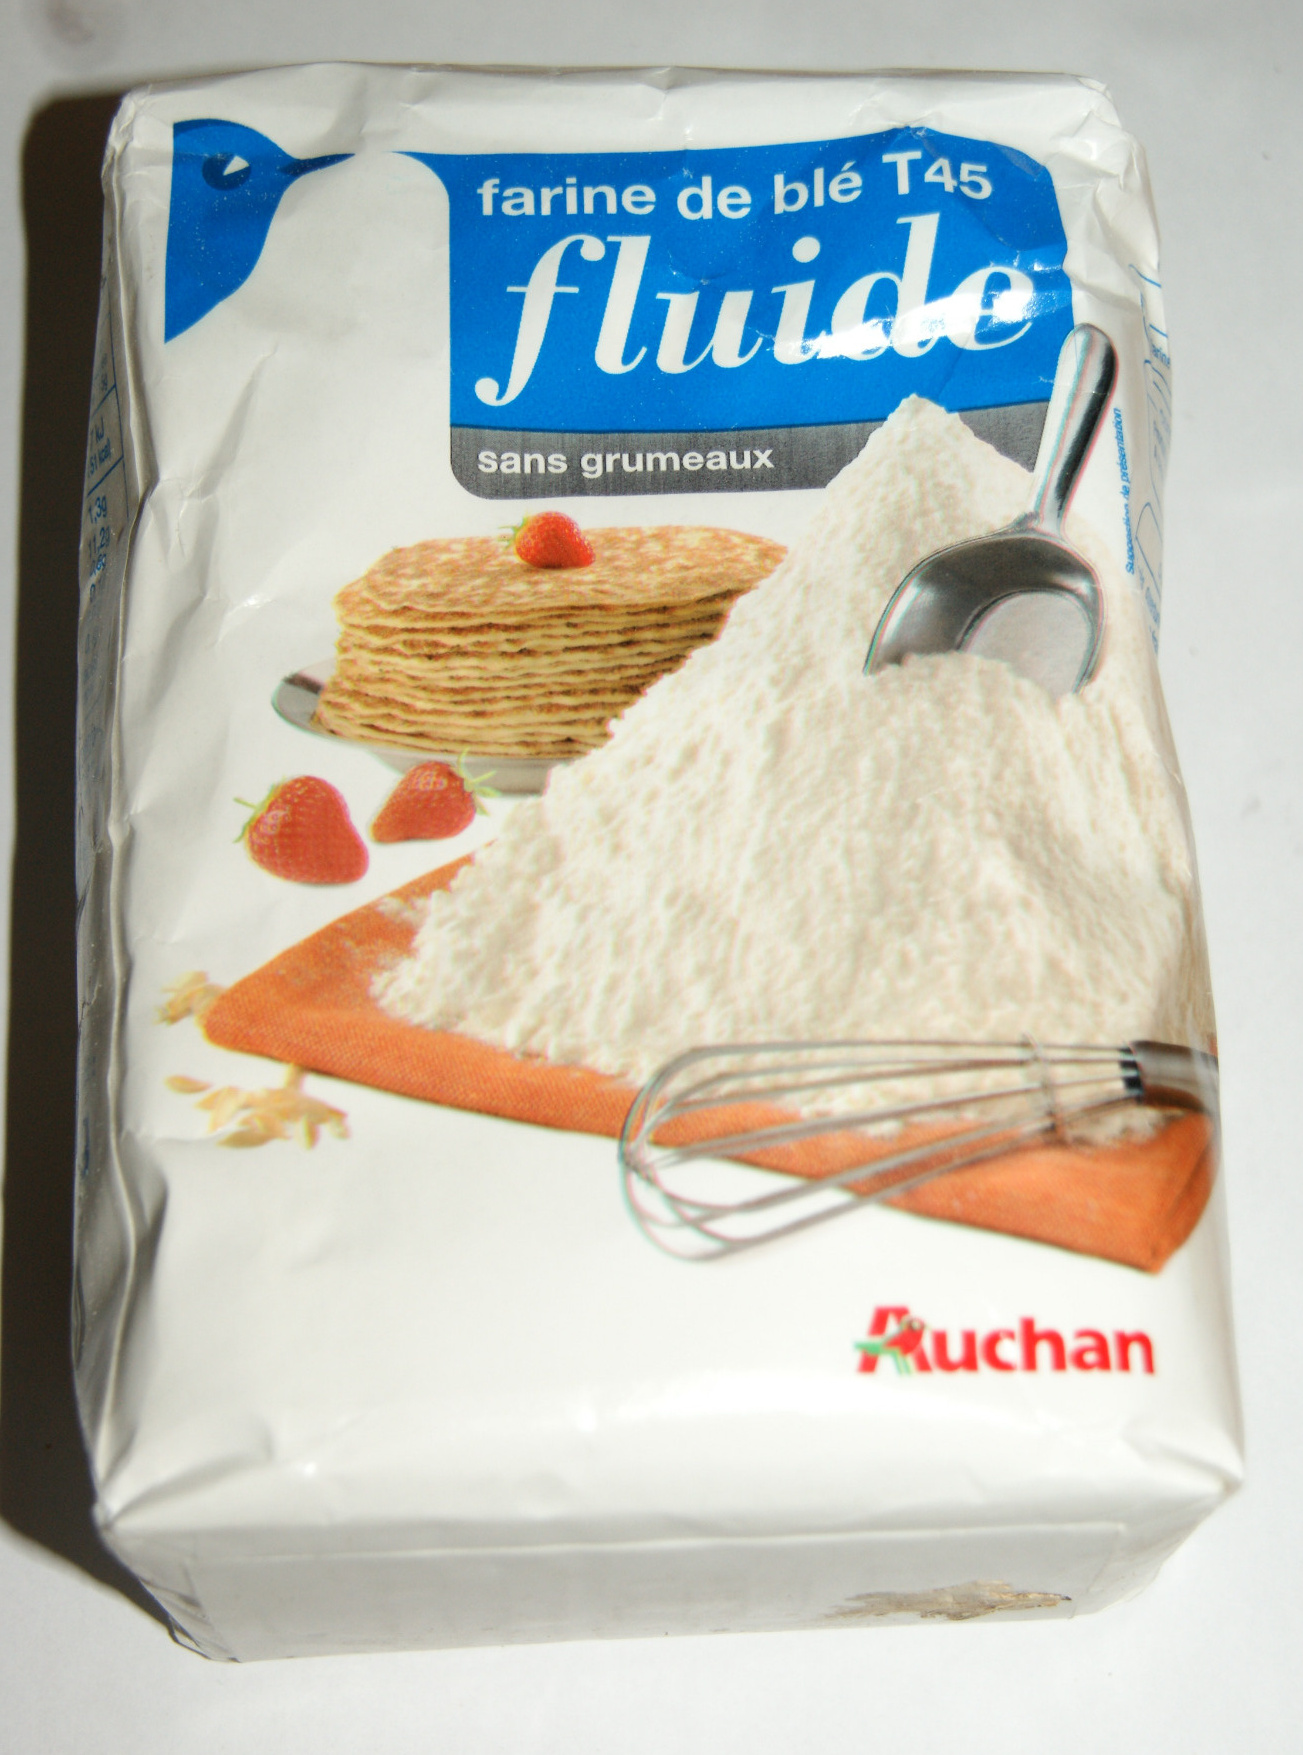 Farine de blé T45 fluide sans grumeaux - Produkt - fr